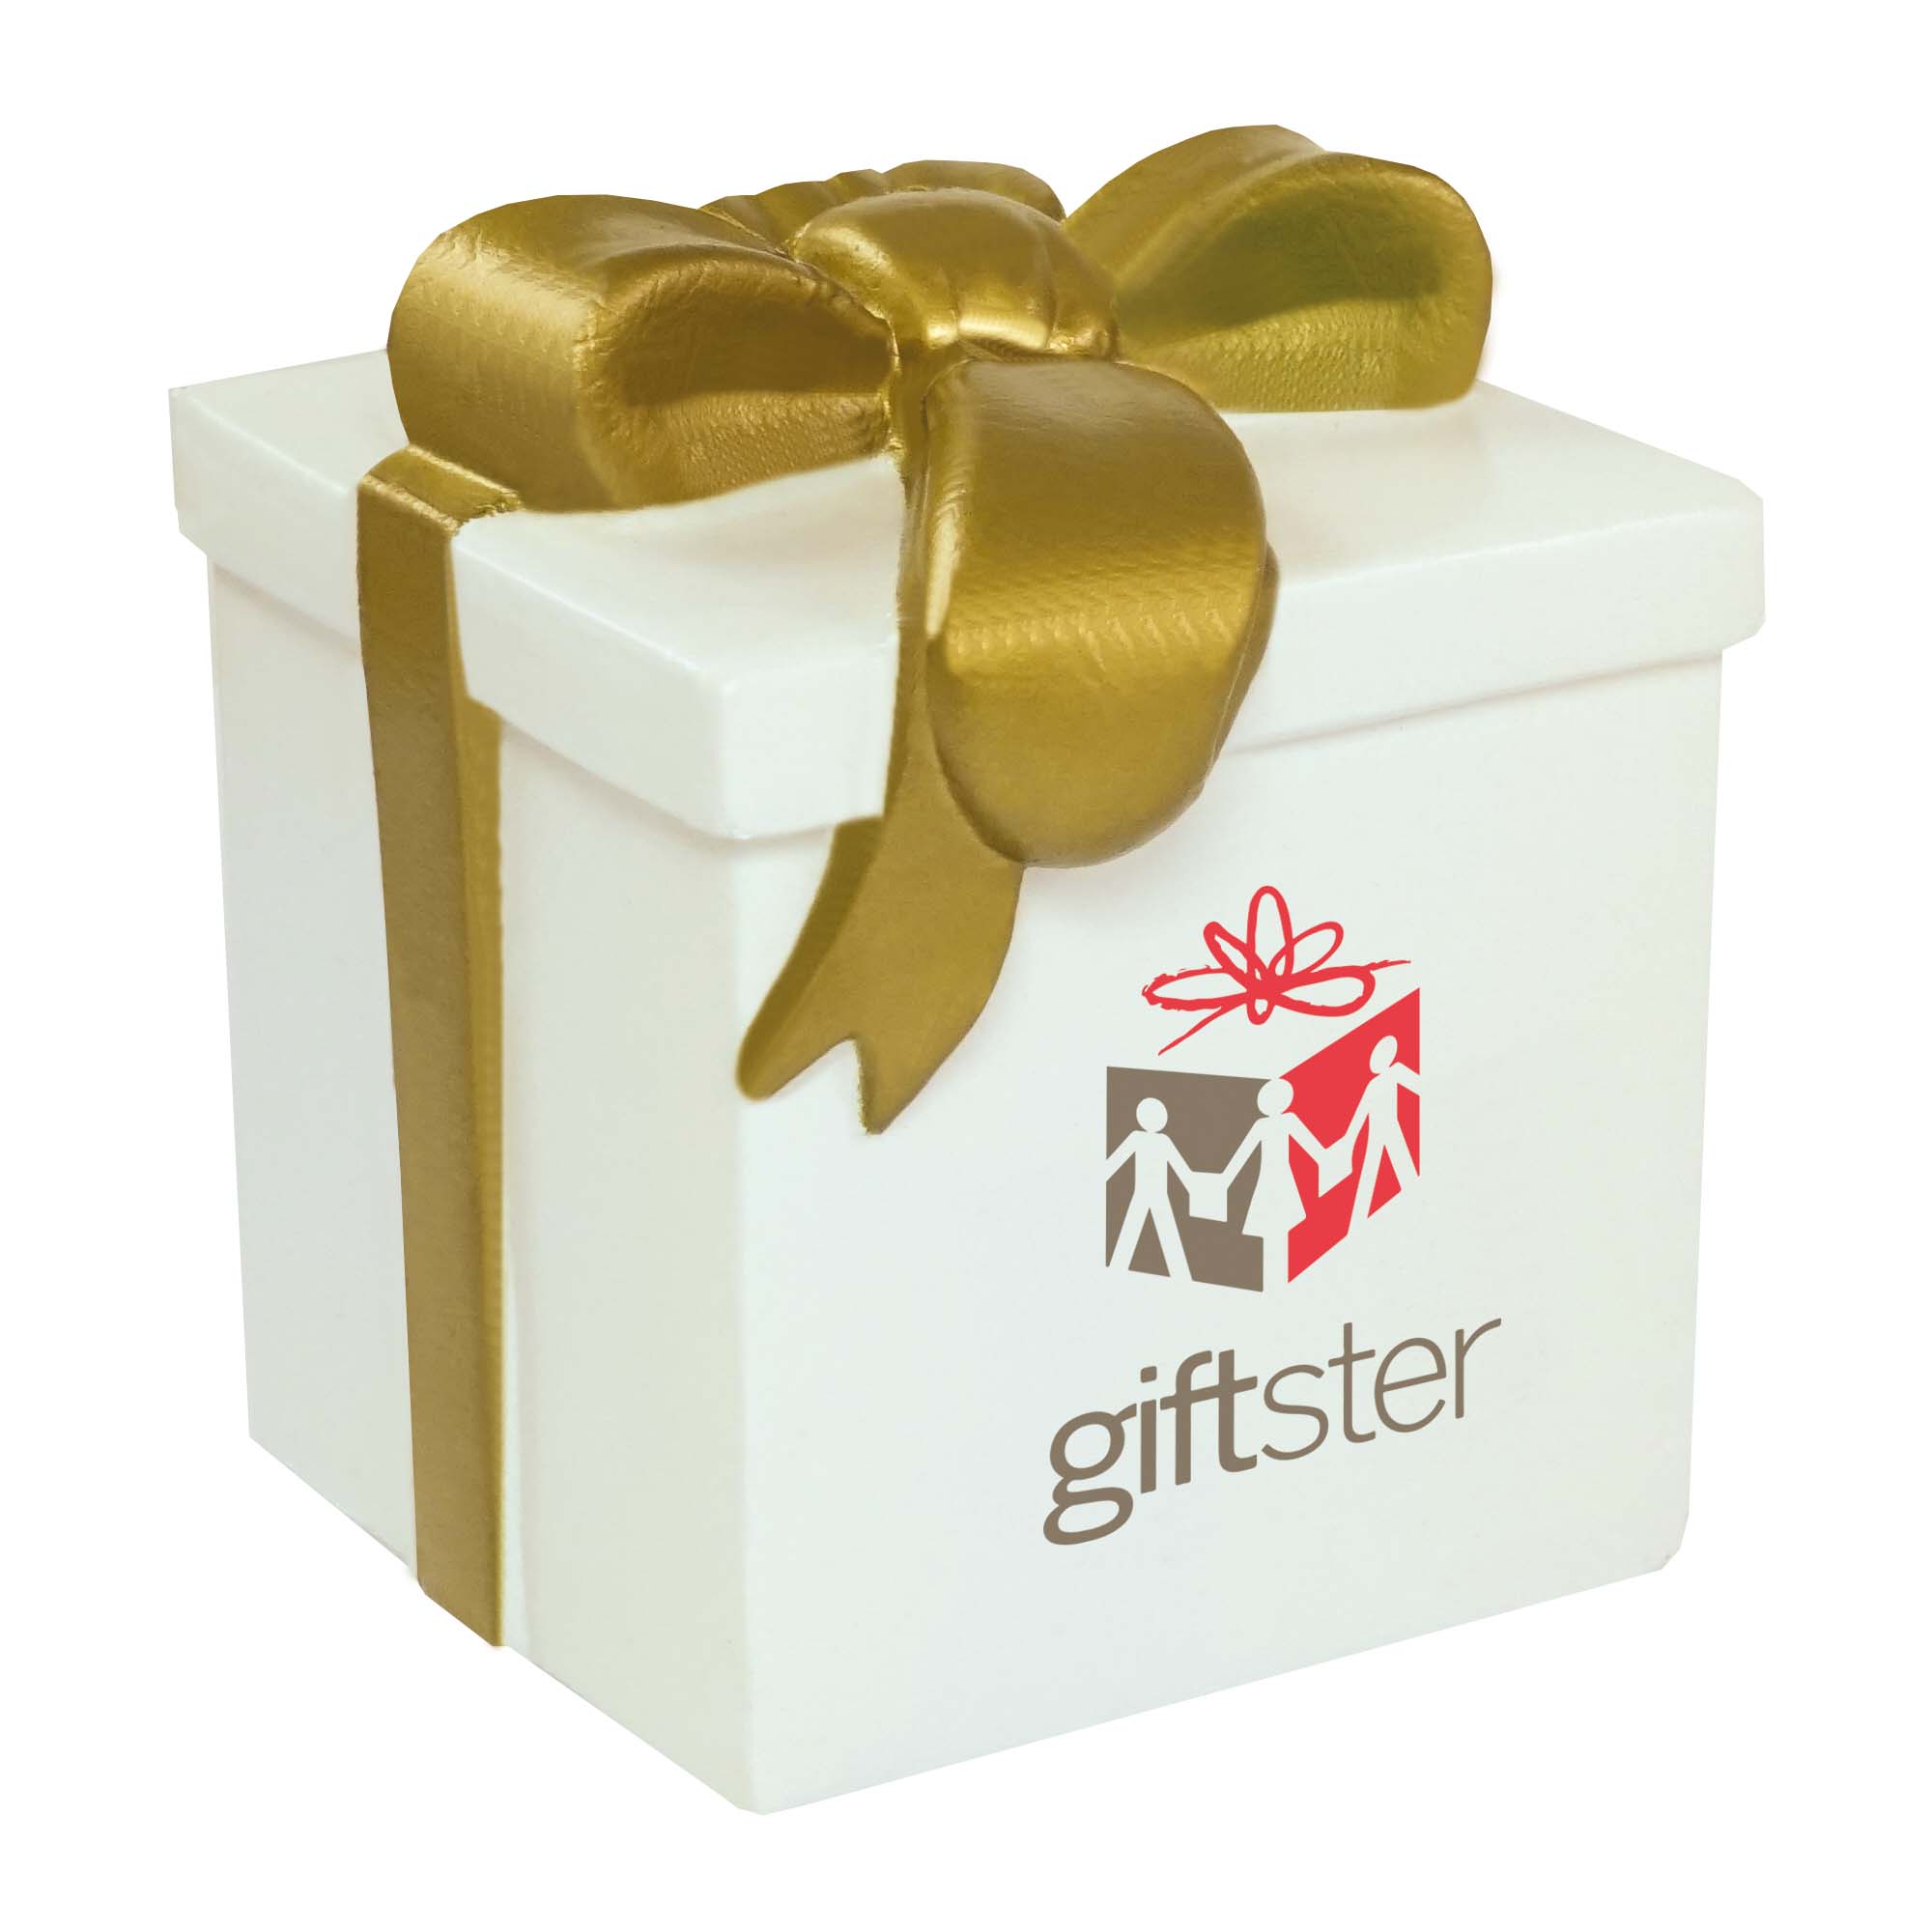 Stress Gift Box